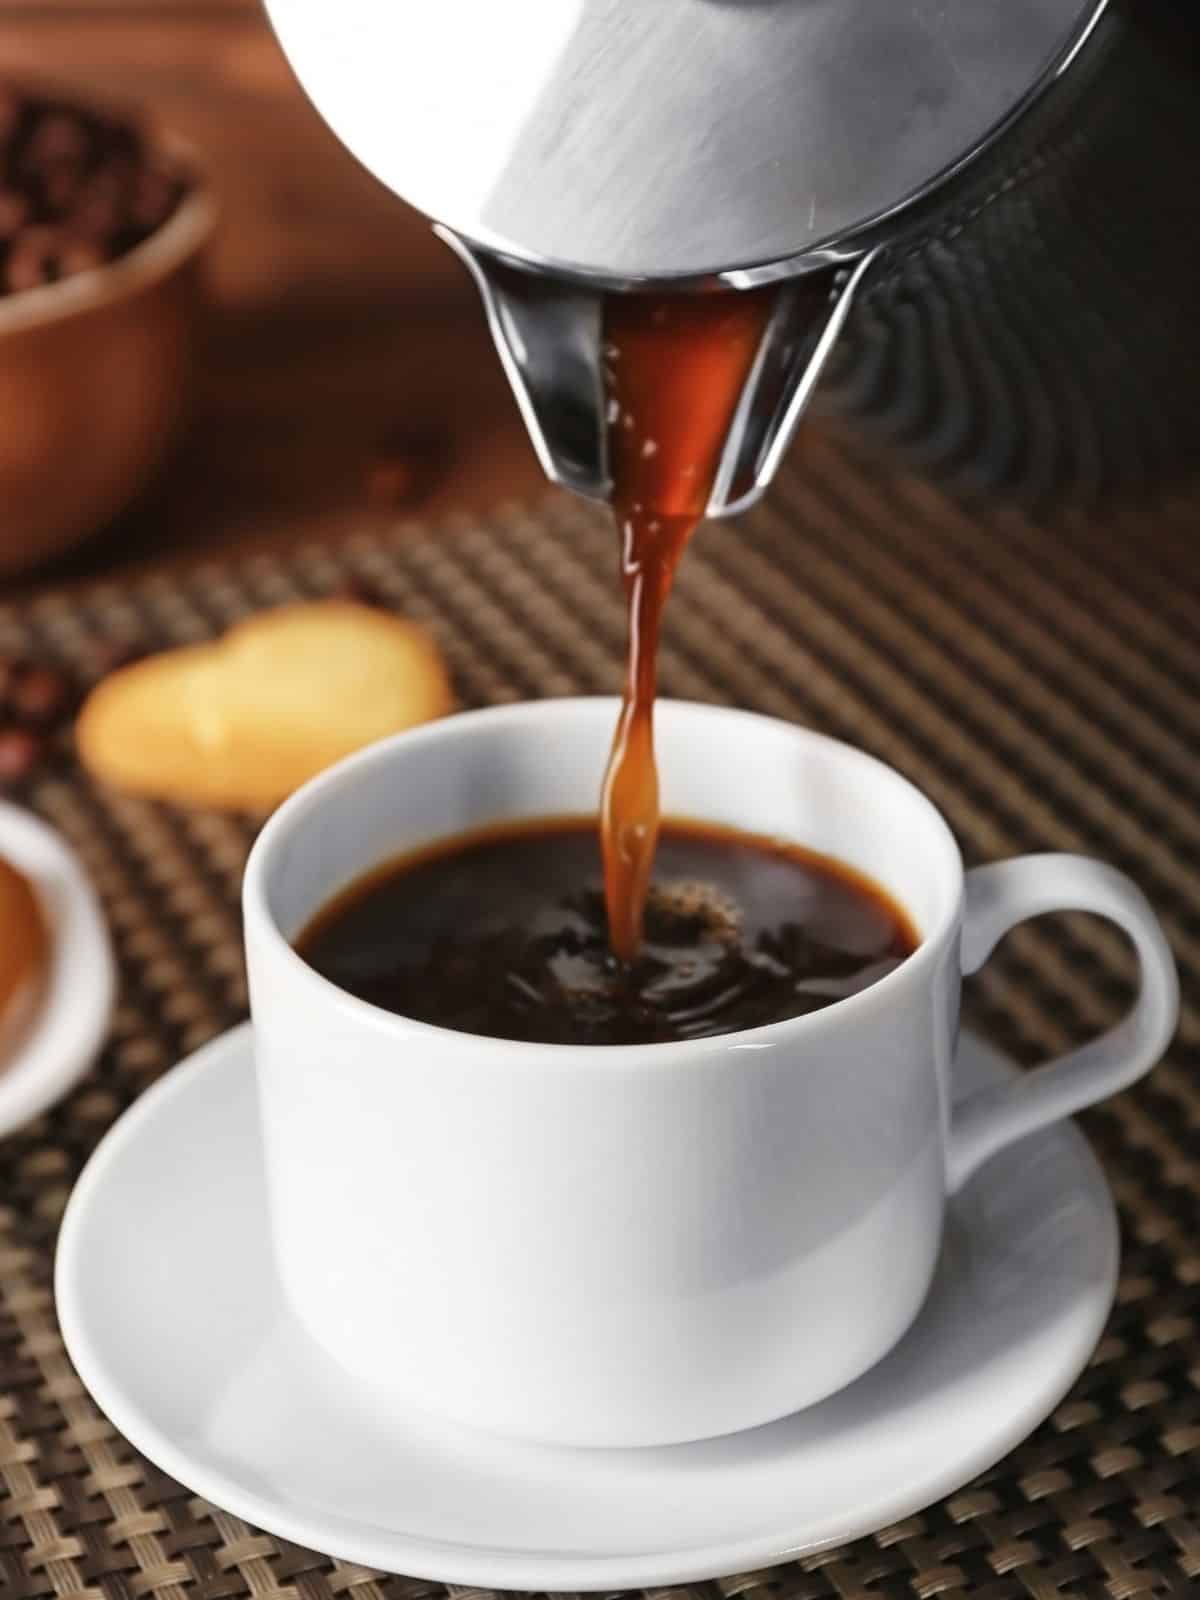 A coffee pot pouring coffee into a mug.